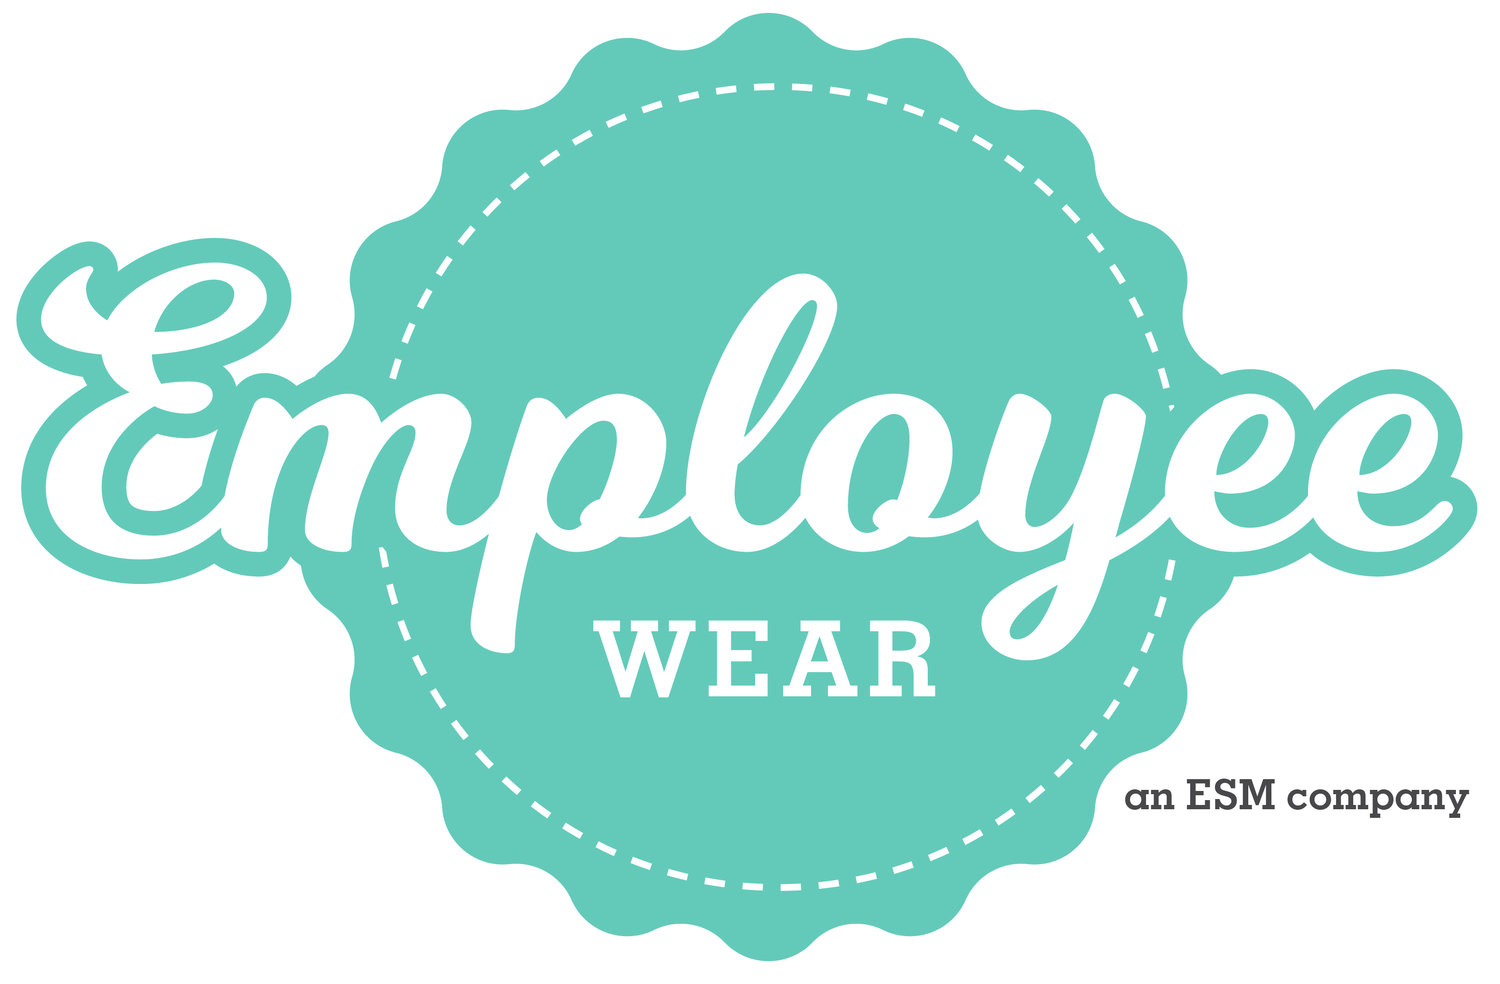 contact-employee-wear